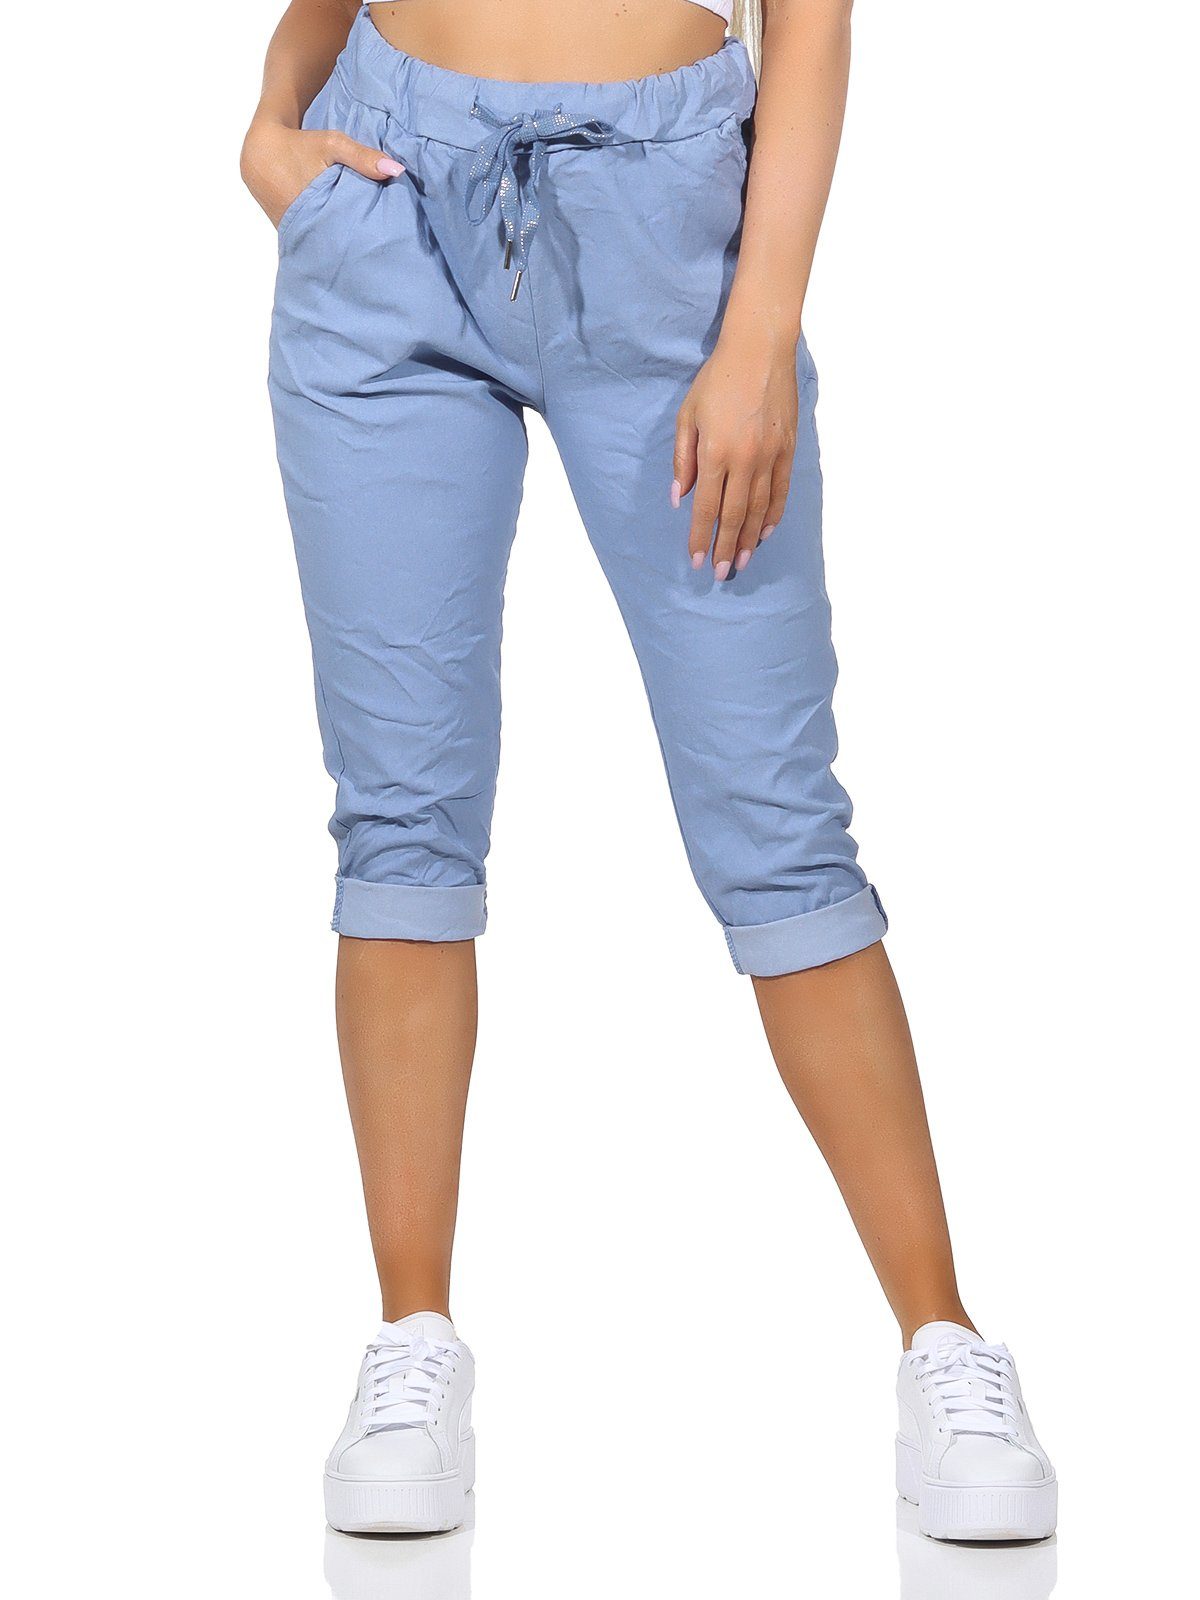 Taschen Hose Kordelzug, in Damenmode sommerlichen Bermuda Capri und Damen Farben, 7/8-Hose Sommerhose Aurela Kurze 36-44 Jeans